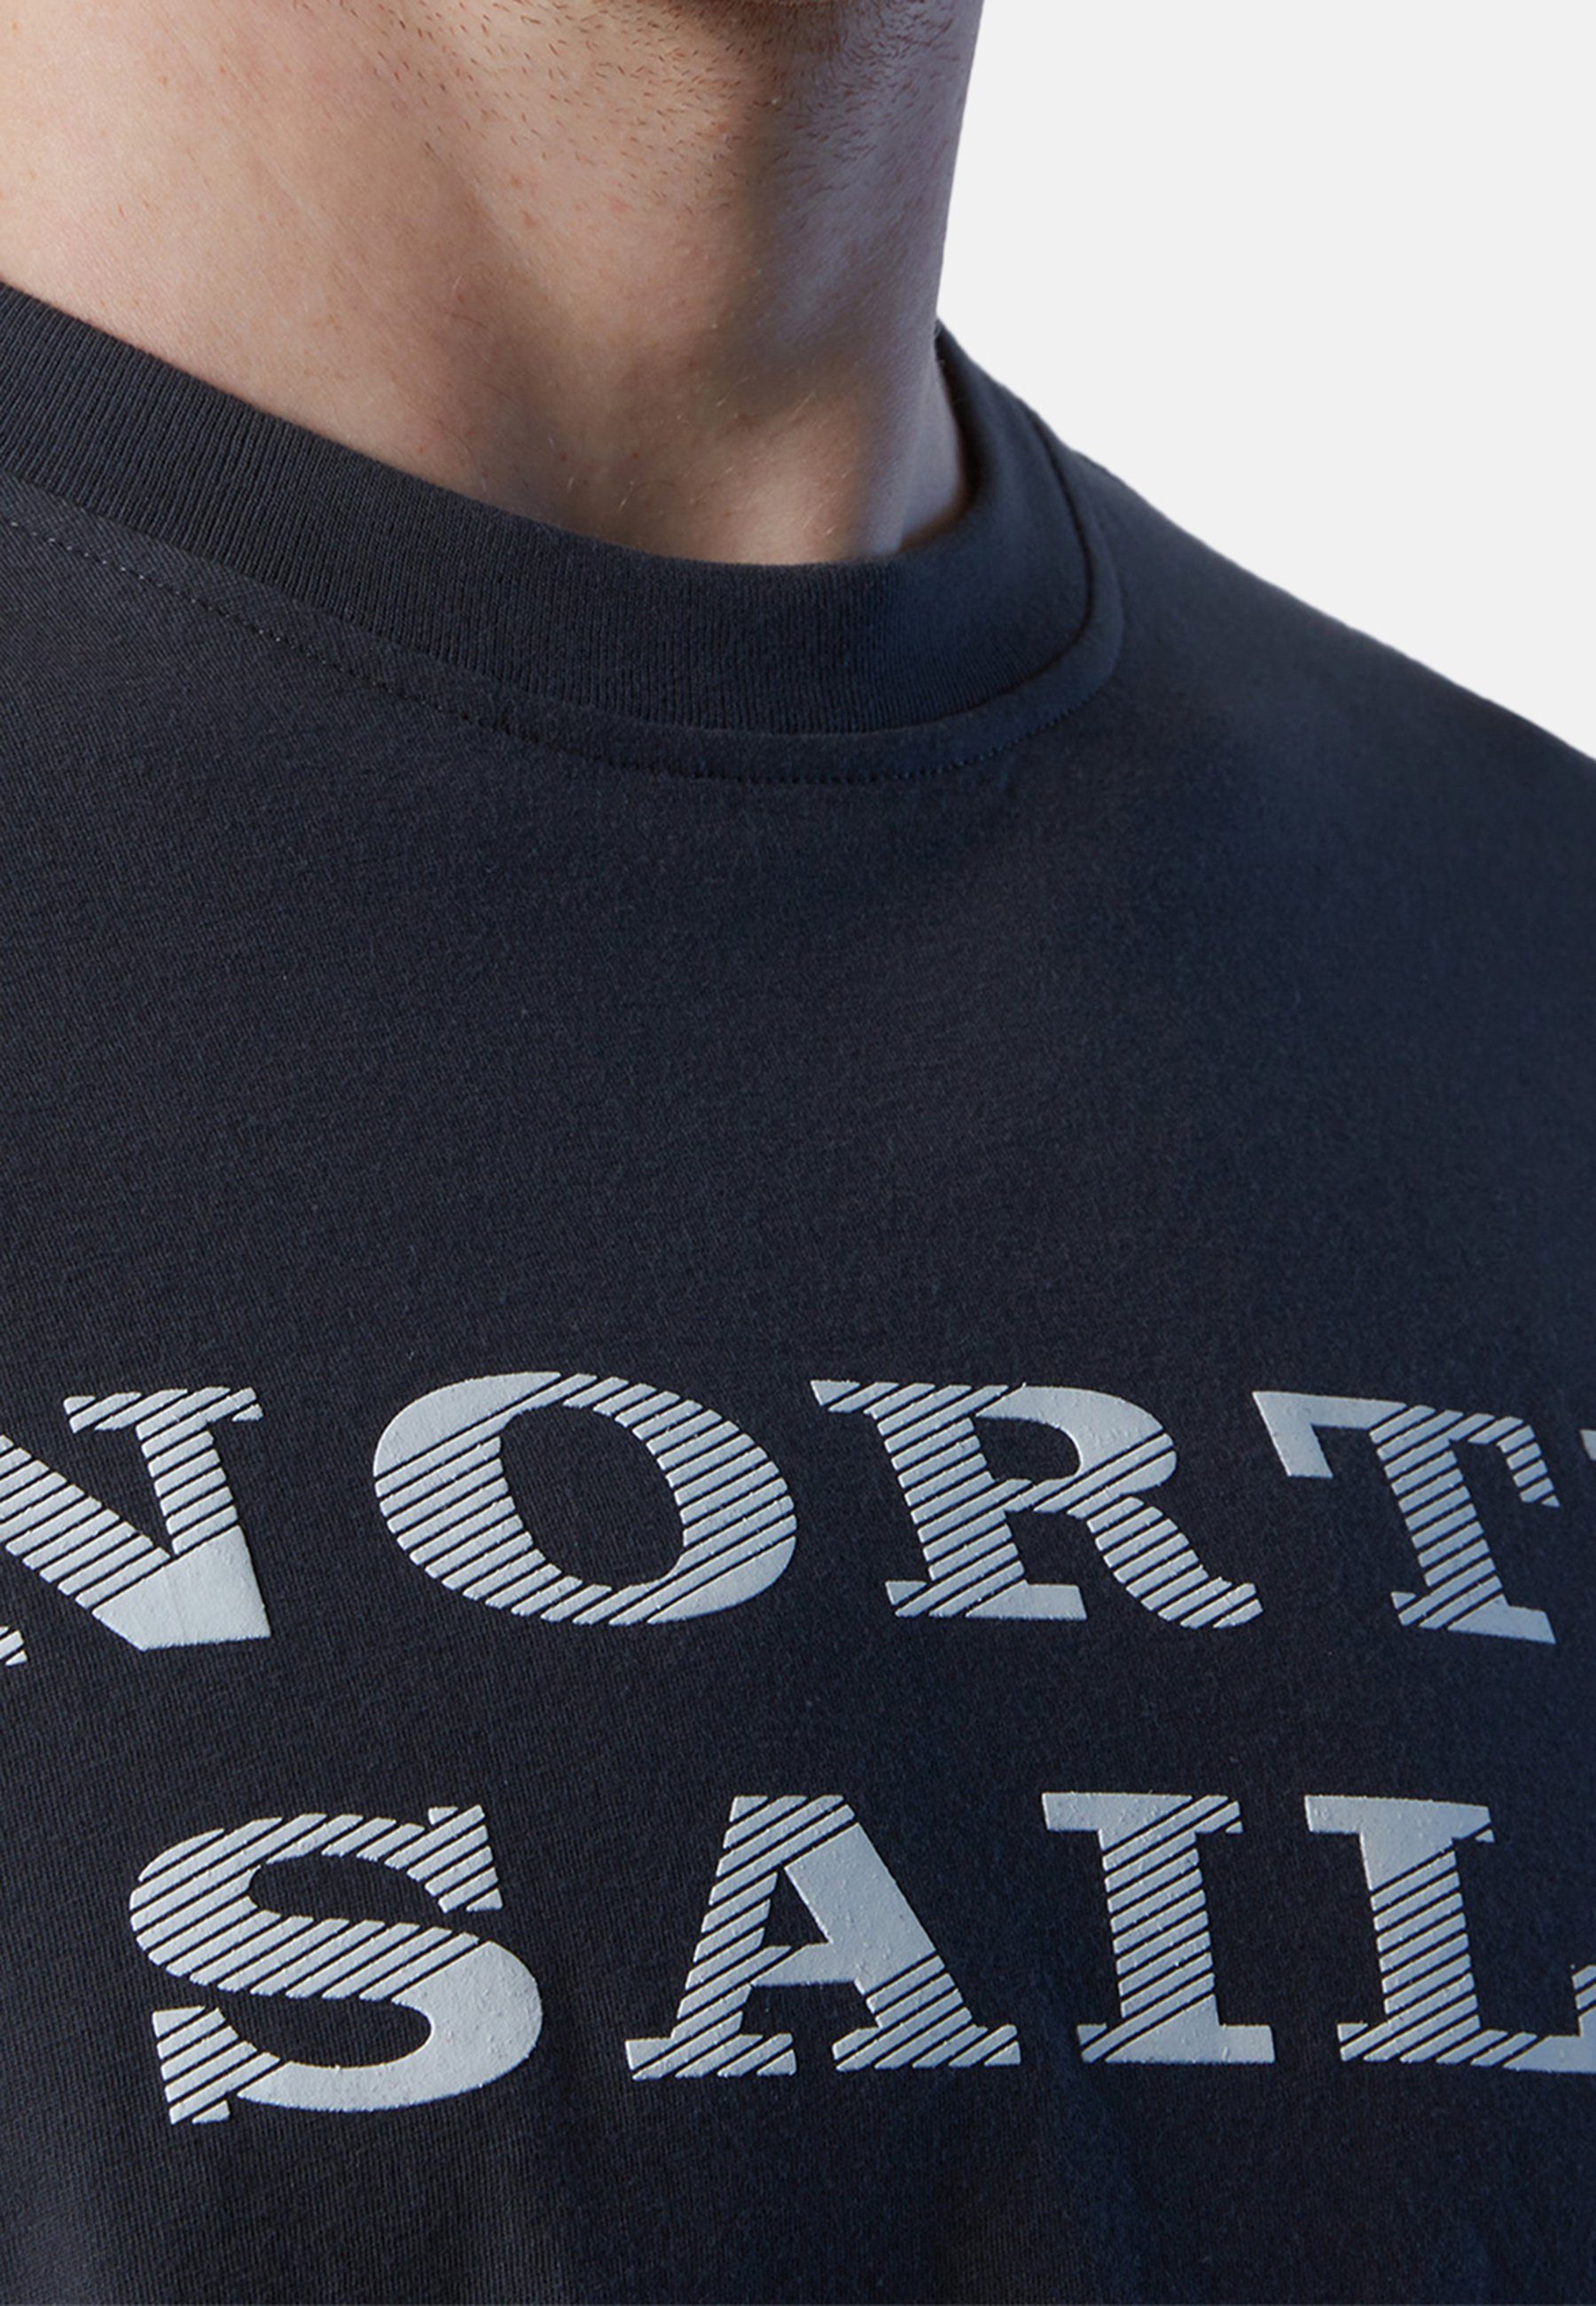 North Sails T-Shirt Brustaufdruck grey mit Ton-in-Ton-Nähte T-Shirt